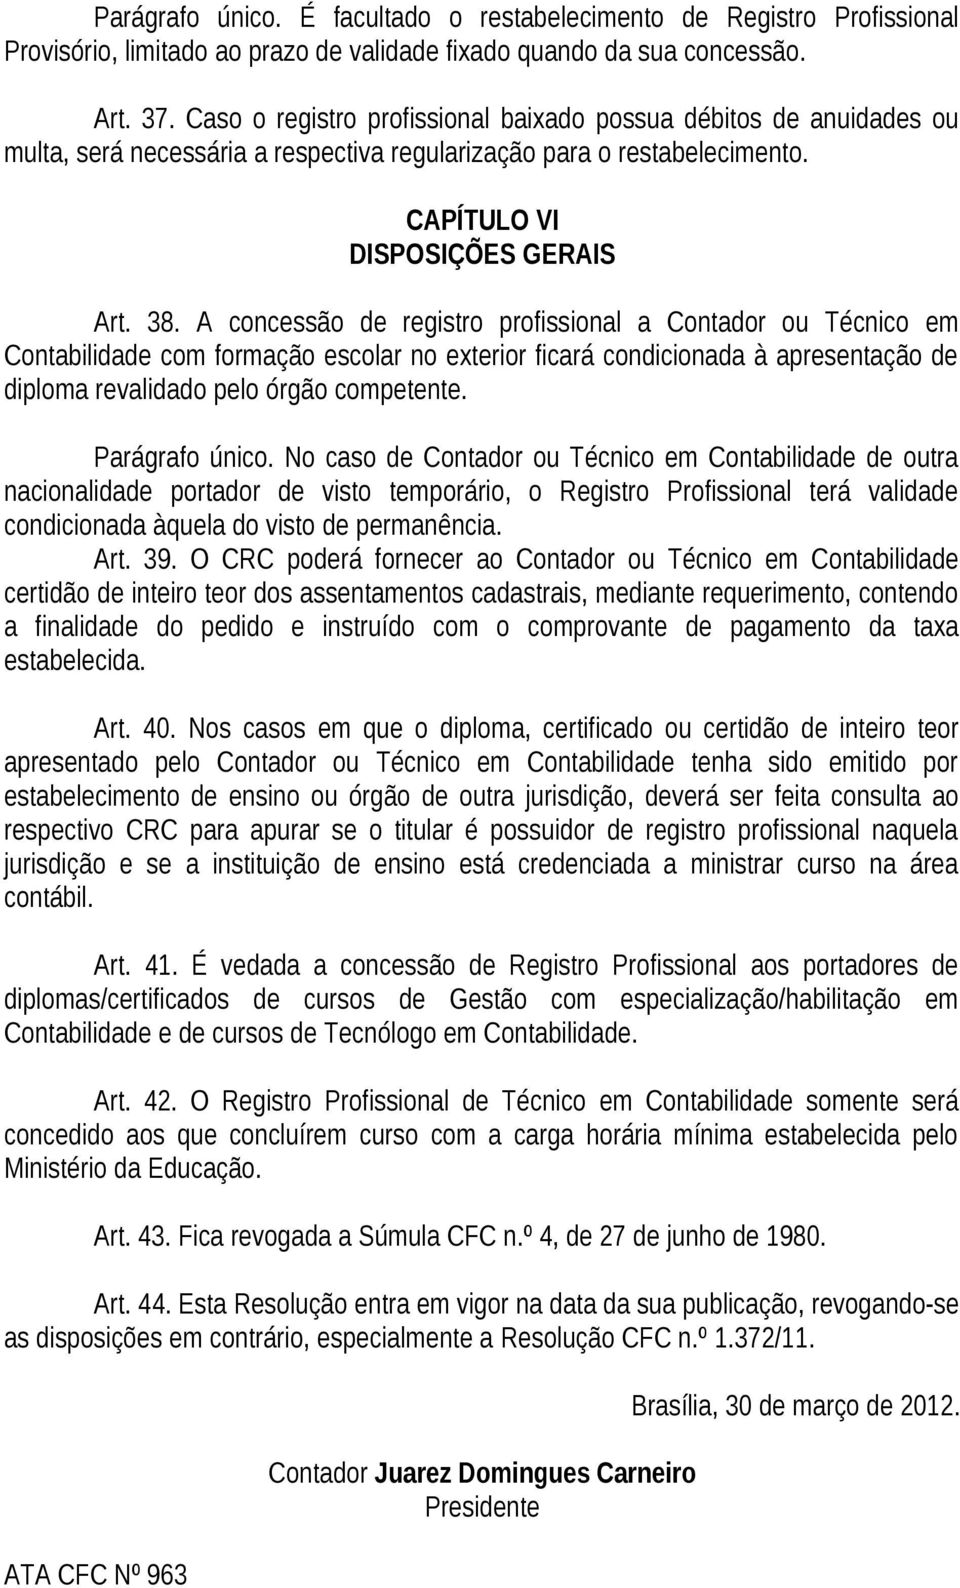 A concessão de registro profissional a Contador ou Técnico em Contabilidade com formação escolar no exterior ficará condicionada à apresentação de diploma revalidado pelo órgão competente.